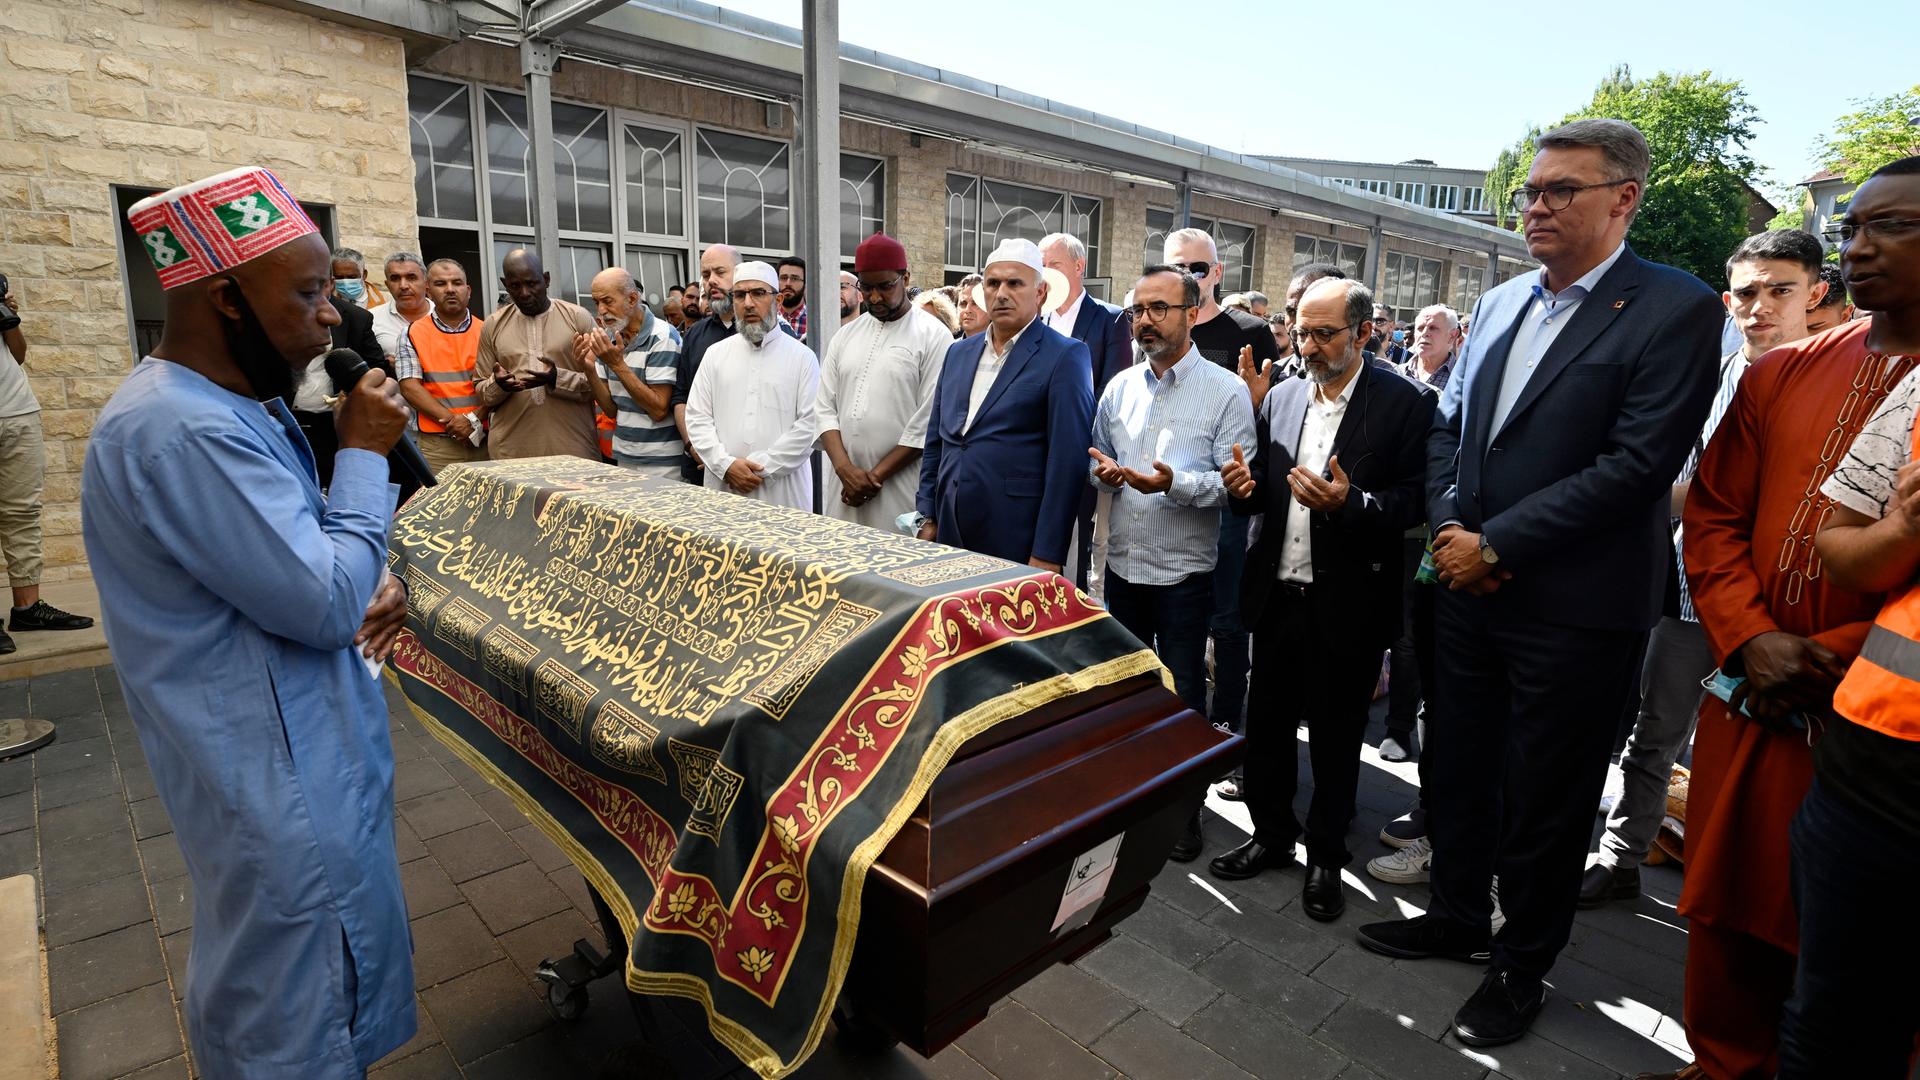 Im Beisein von Dortmunds Oberbürgermeister Thomas Westphal findet in der Abu-Bakr-Moschee ein Trauergottesdienst statt. Die dortige Gemeinde feiert mit dem Gedenkgottesdienst Abschied von dem bei einem Polizeieinsatz getöteten Jugendlichen.